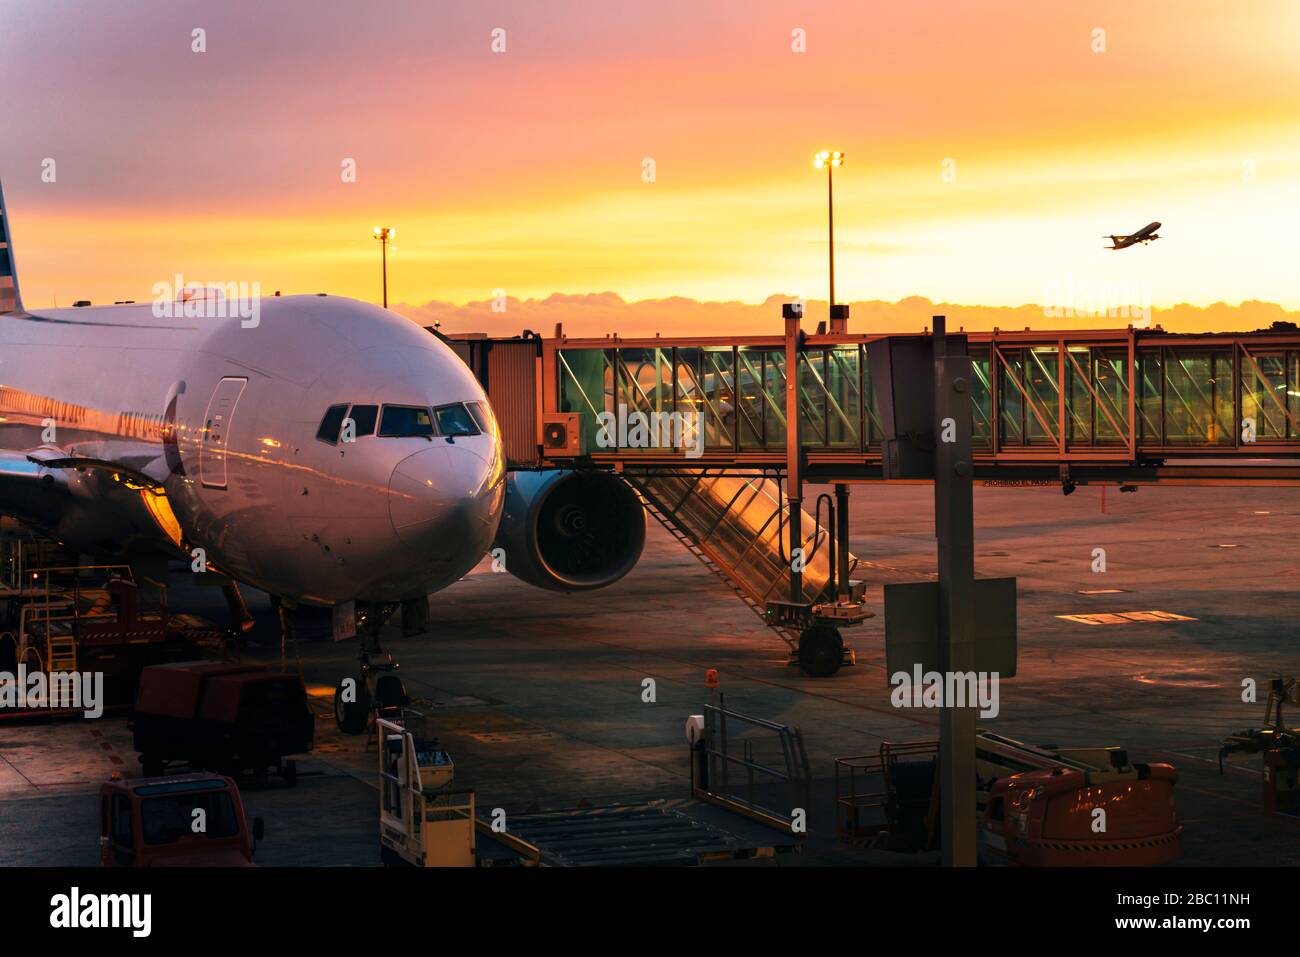 Avion en train de descendre au ciel et un avion prêt à monter à bord, aéroport au lever du soleil à Barcelone, Espagne Banque D'Images